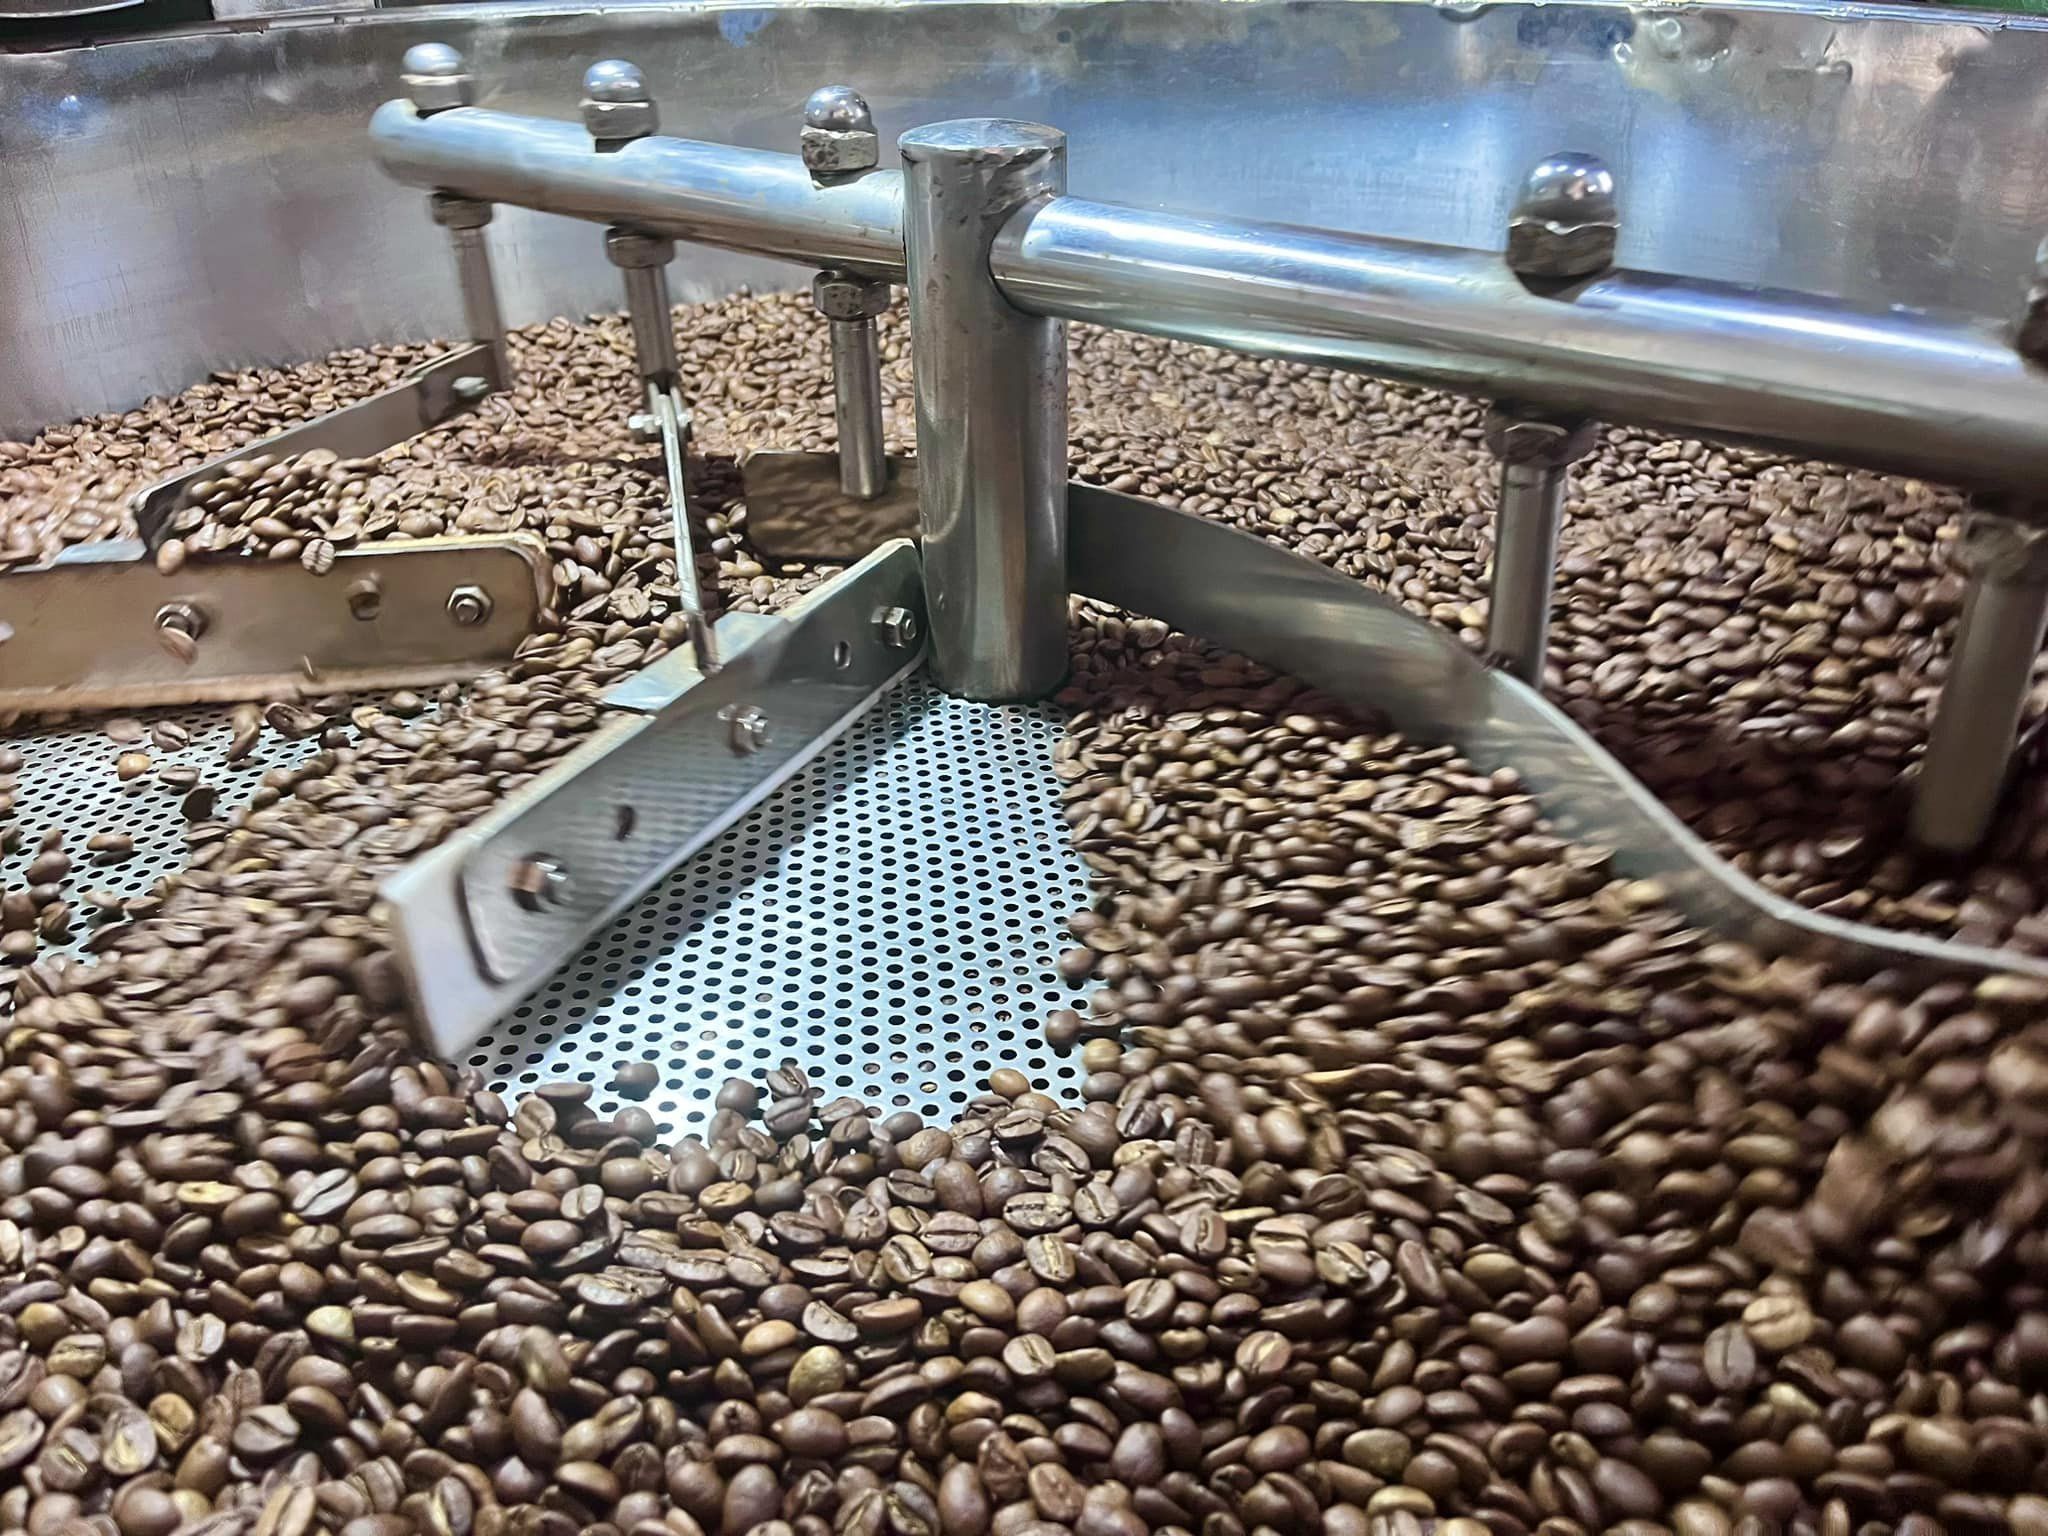 Crie sua própria marca de café, serviço de processamento de café sob demanda (OEM)